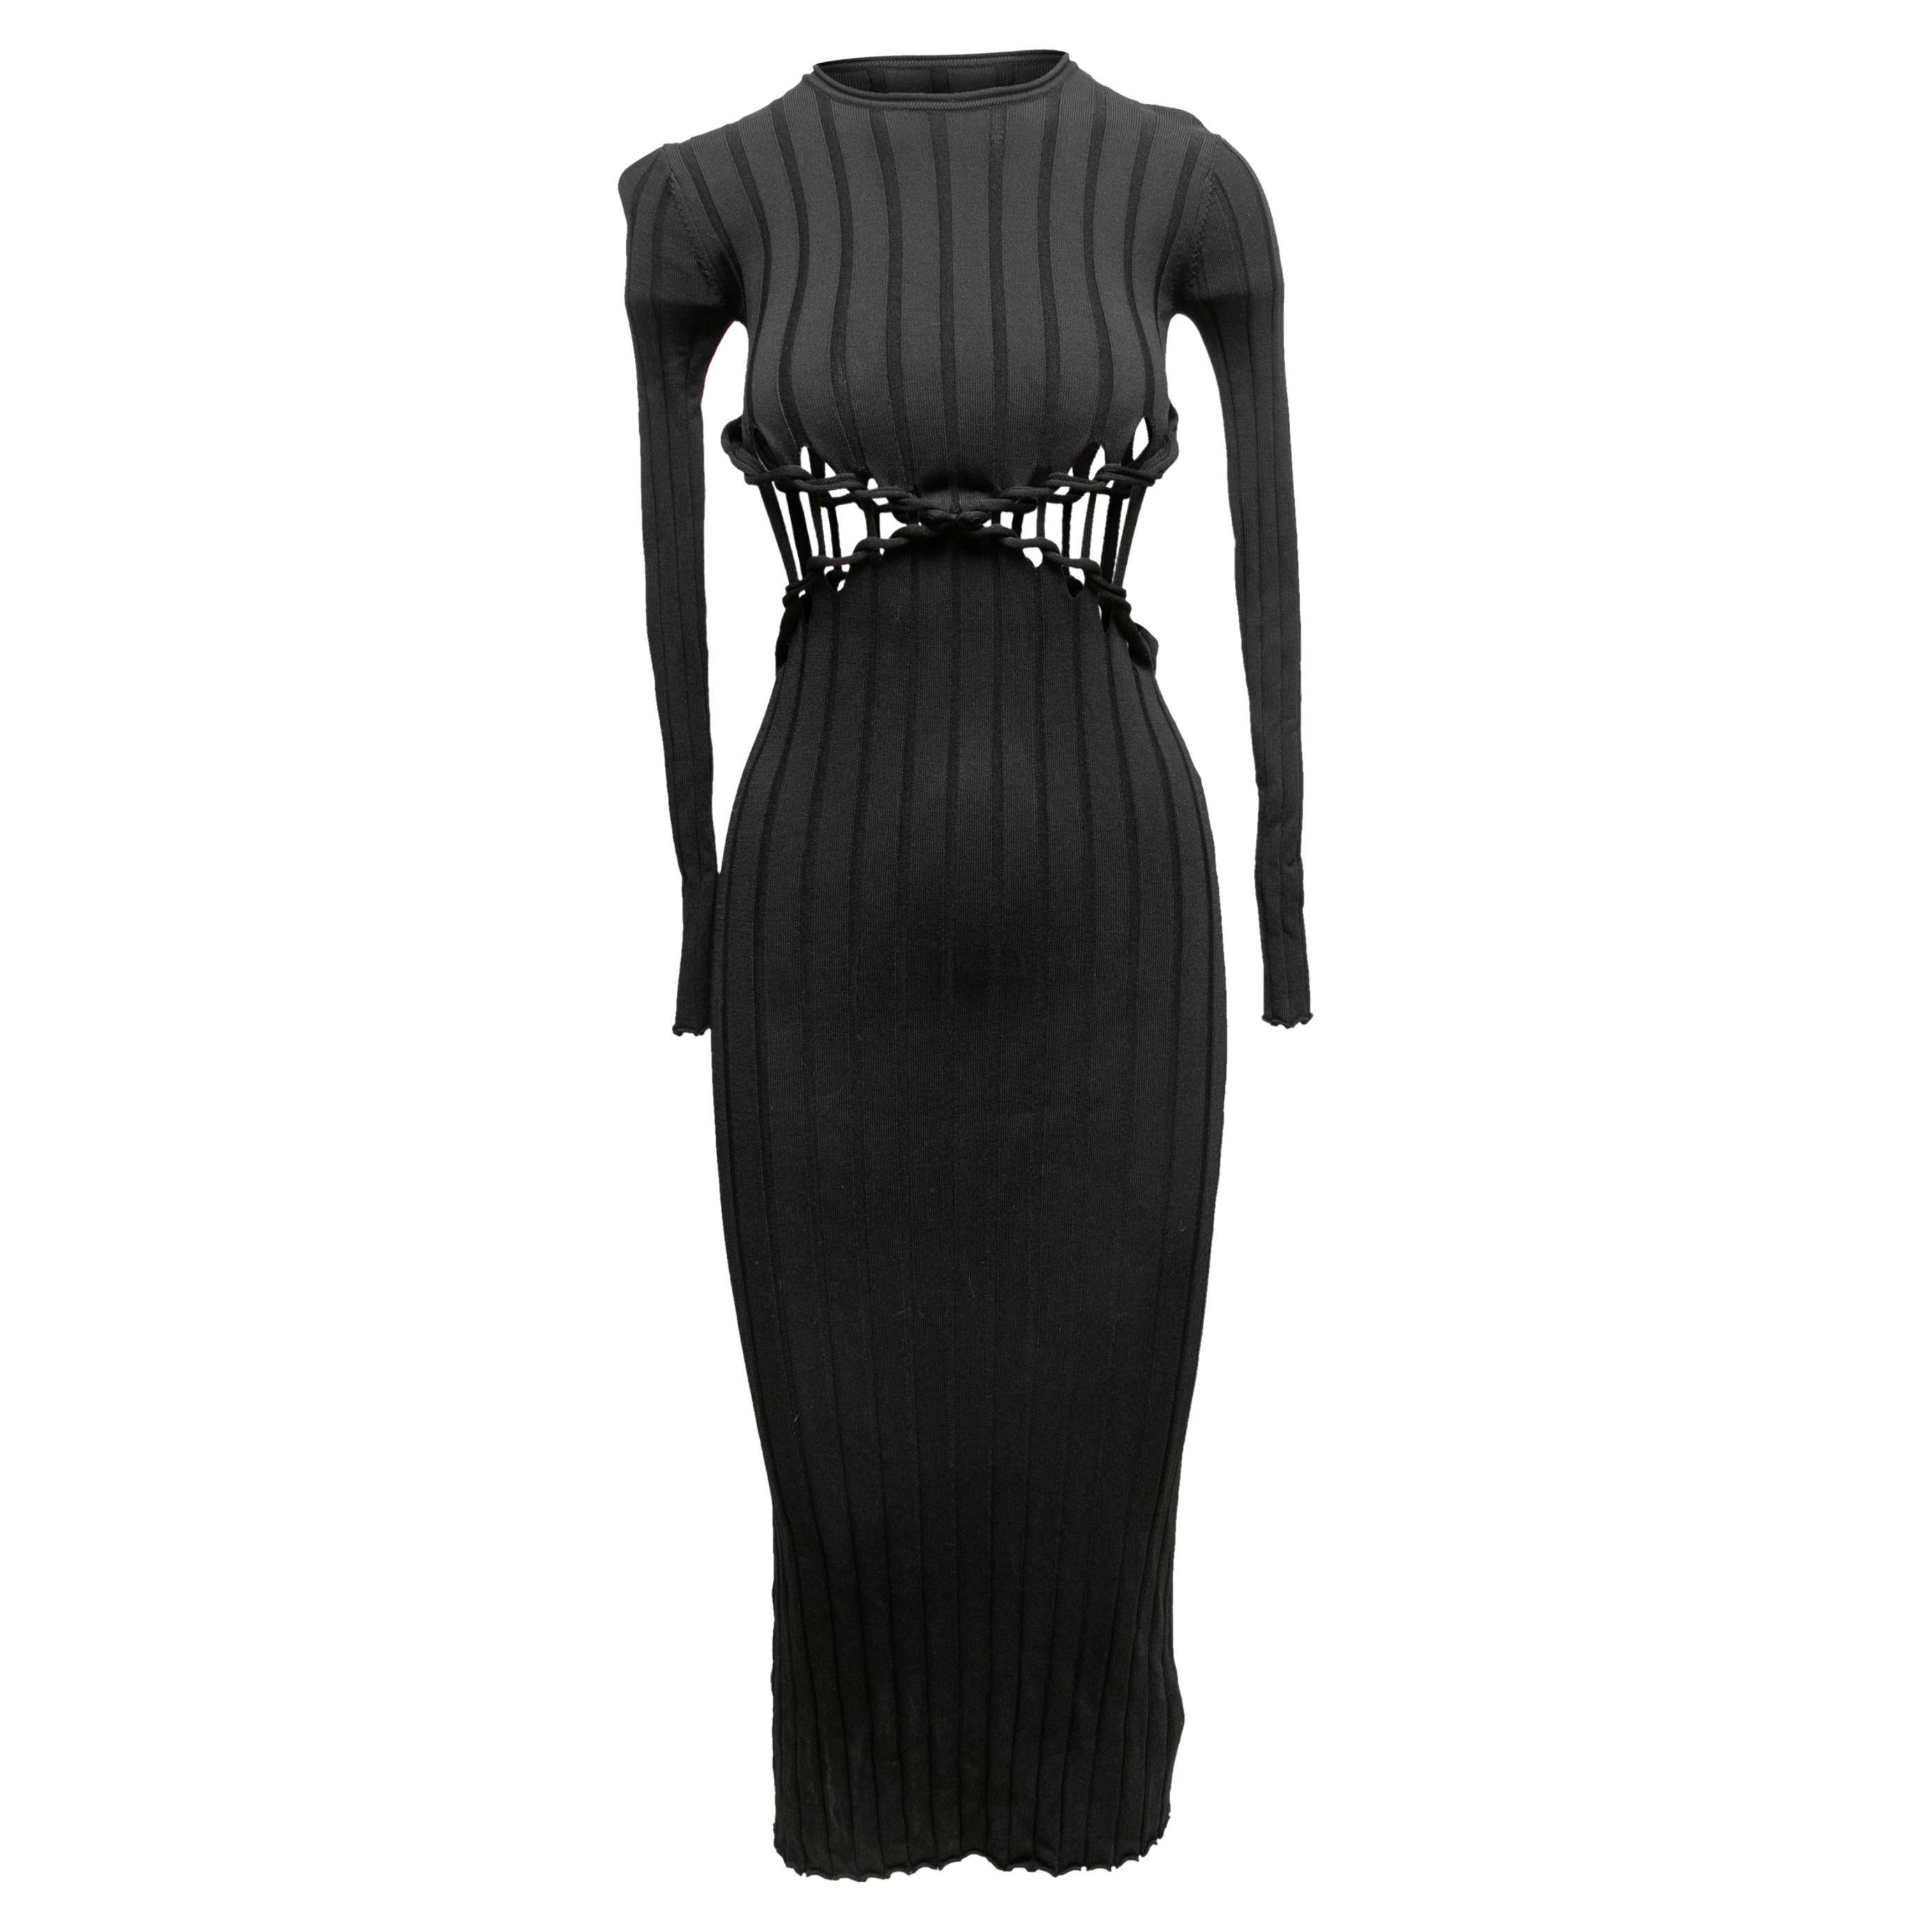 Black Dion Lee Rib Knit Maxi Dress Size US 2